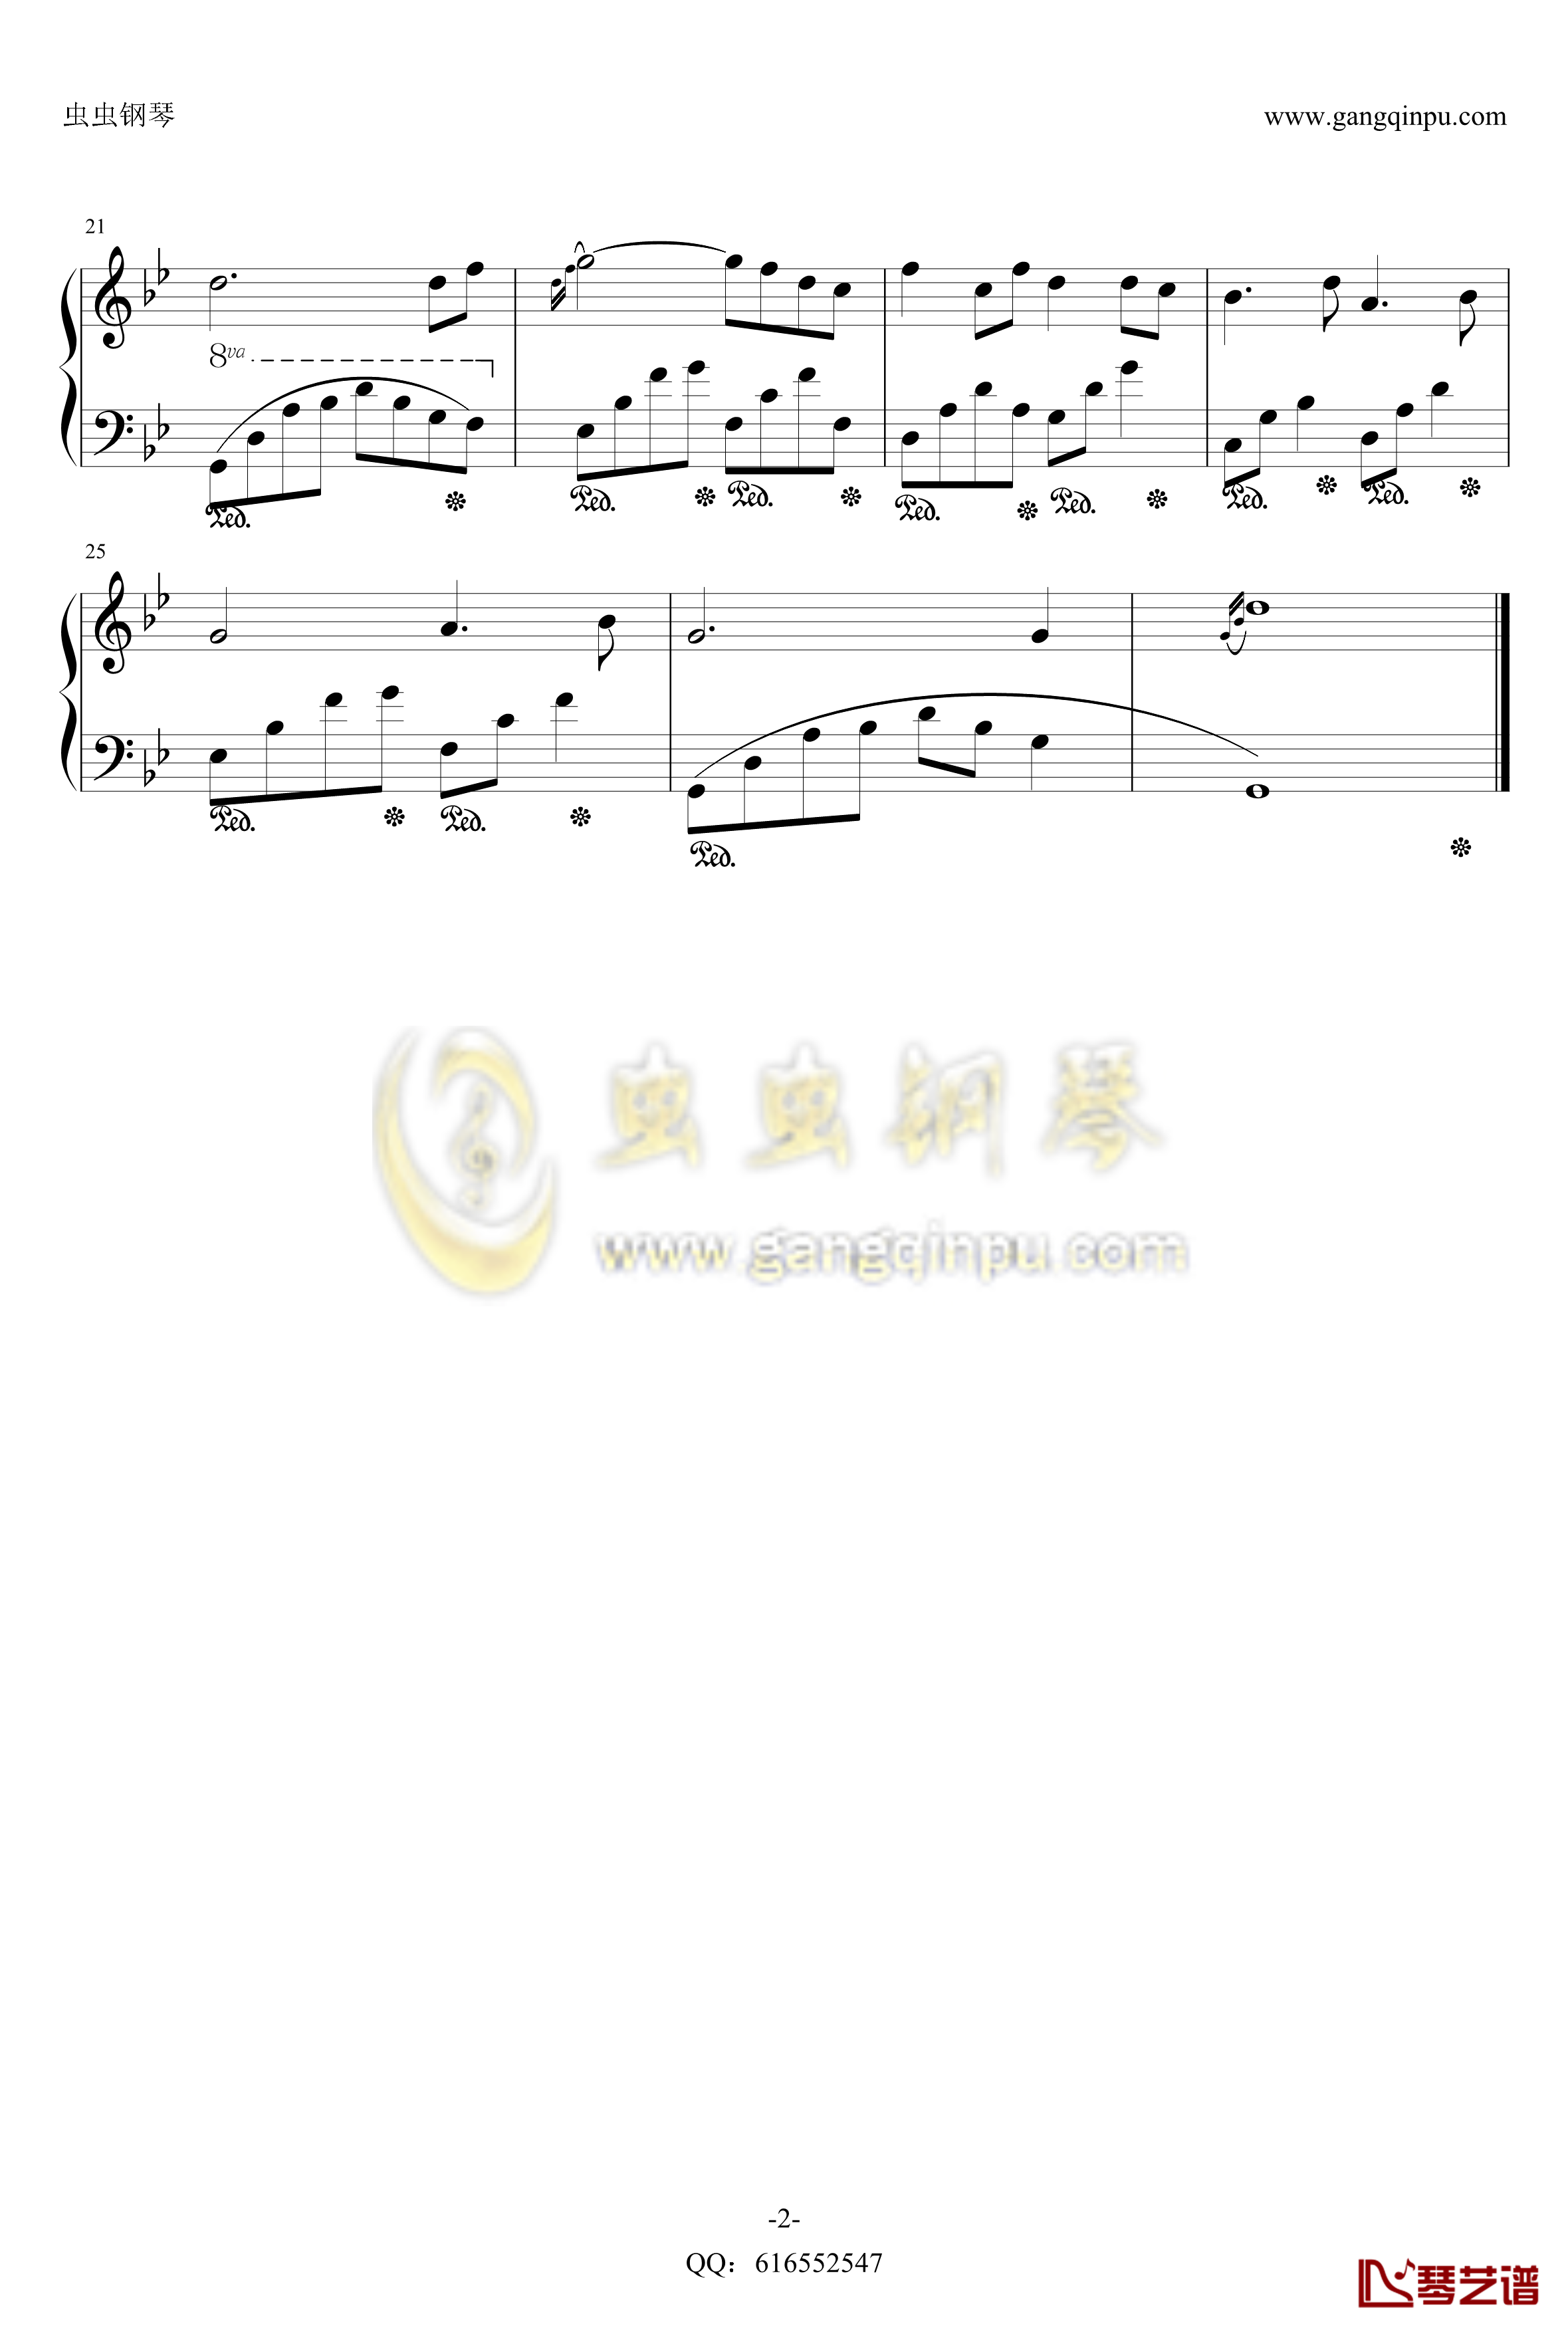 夜的钢琴曲1钢琴谱-金龙鱼优化版160606-石进